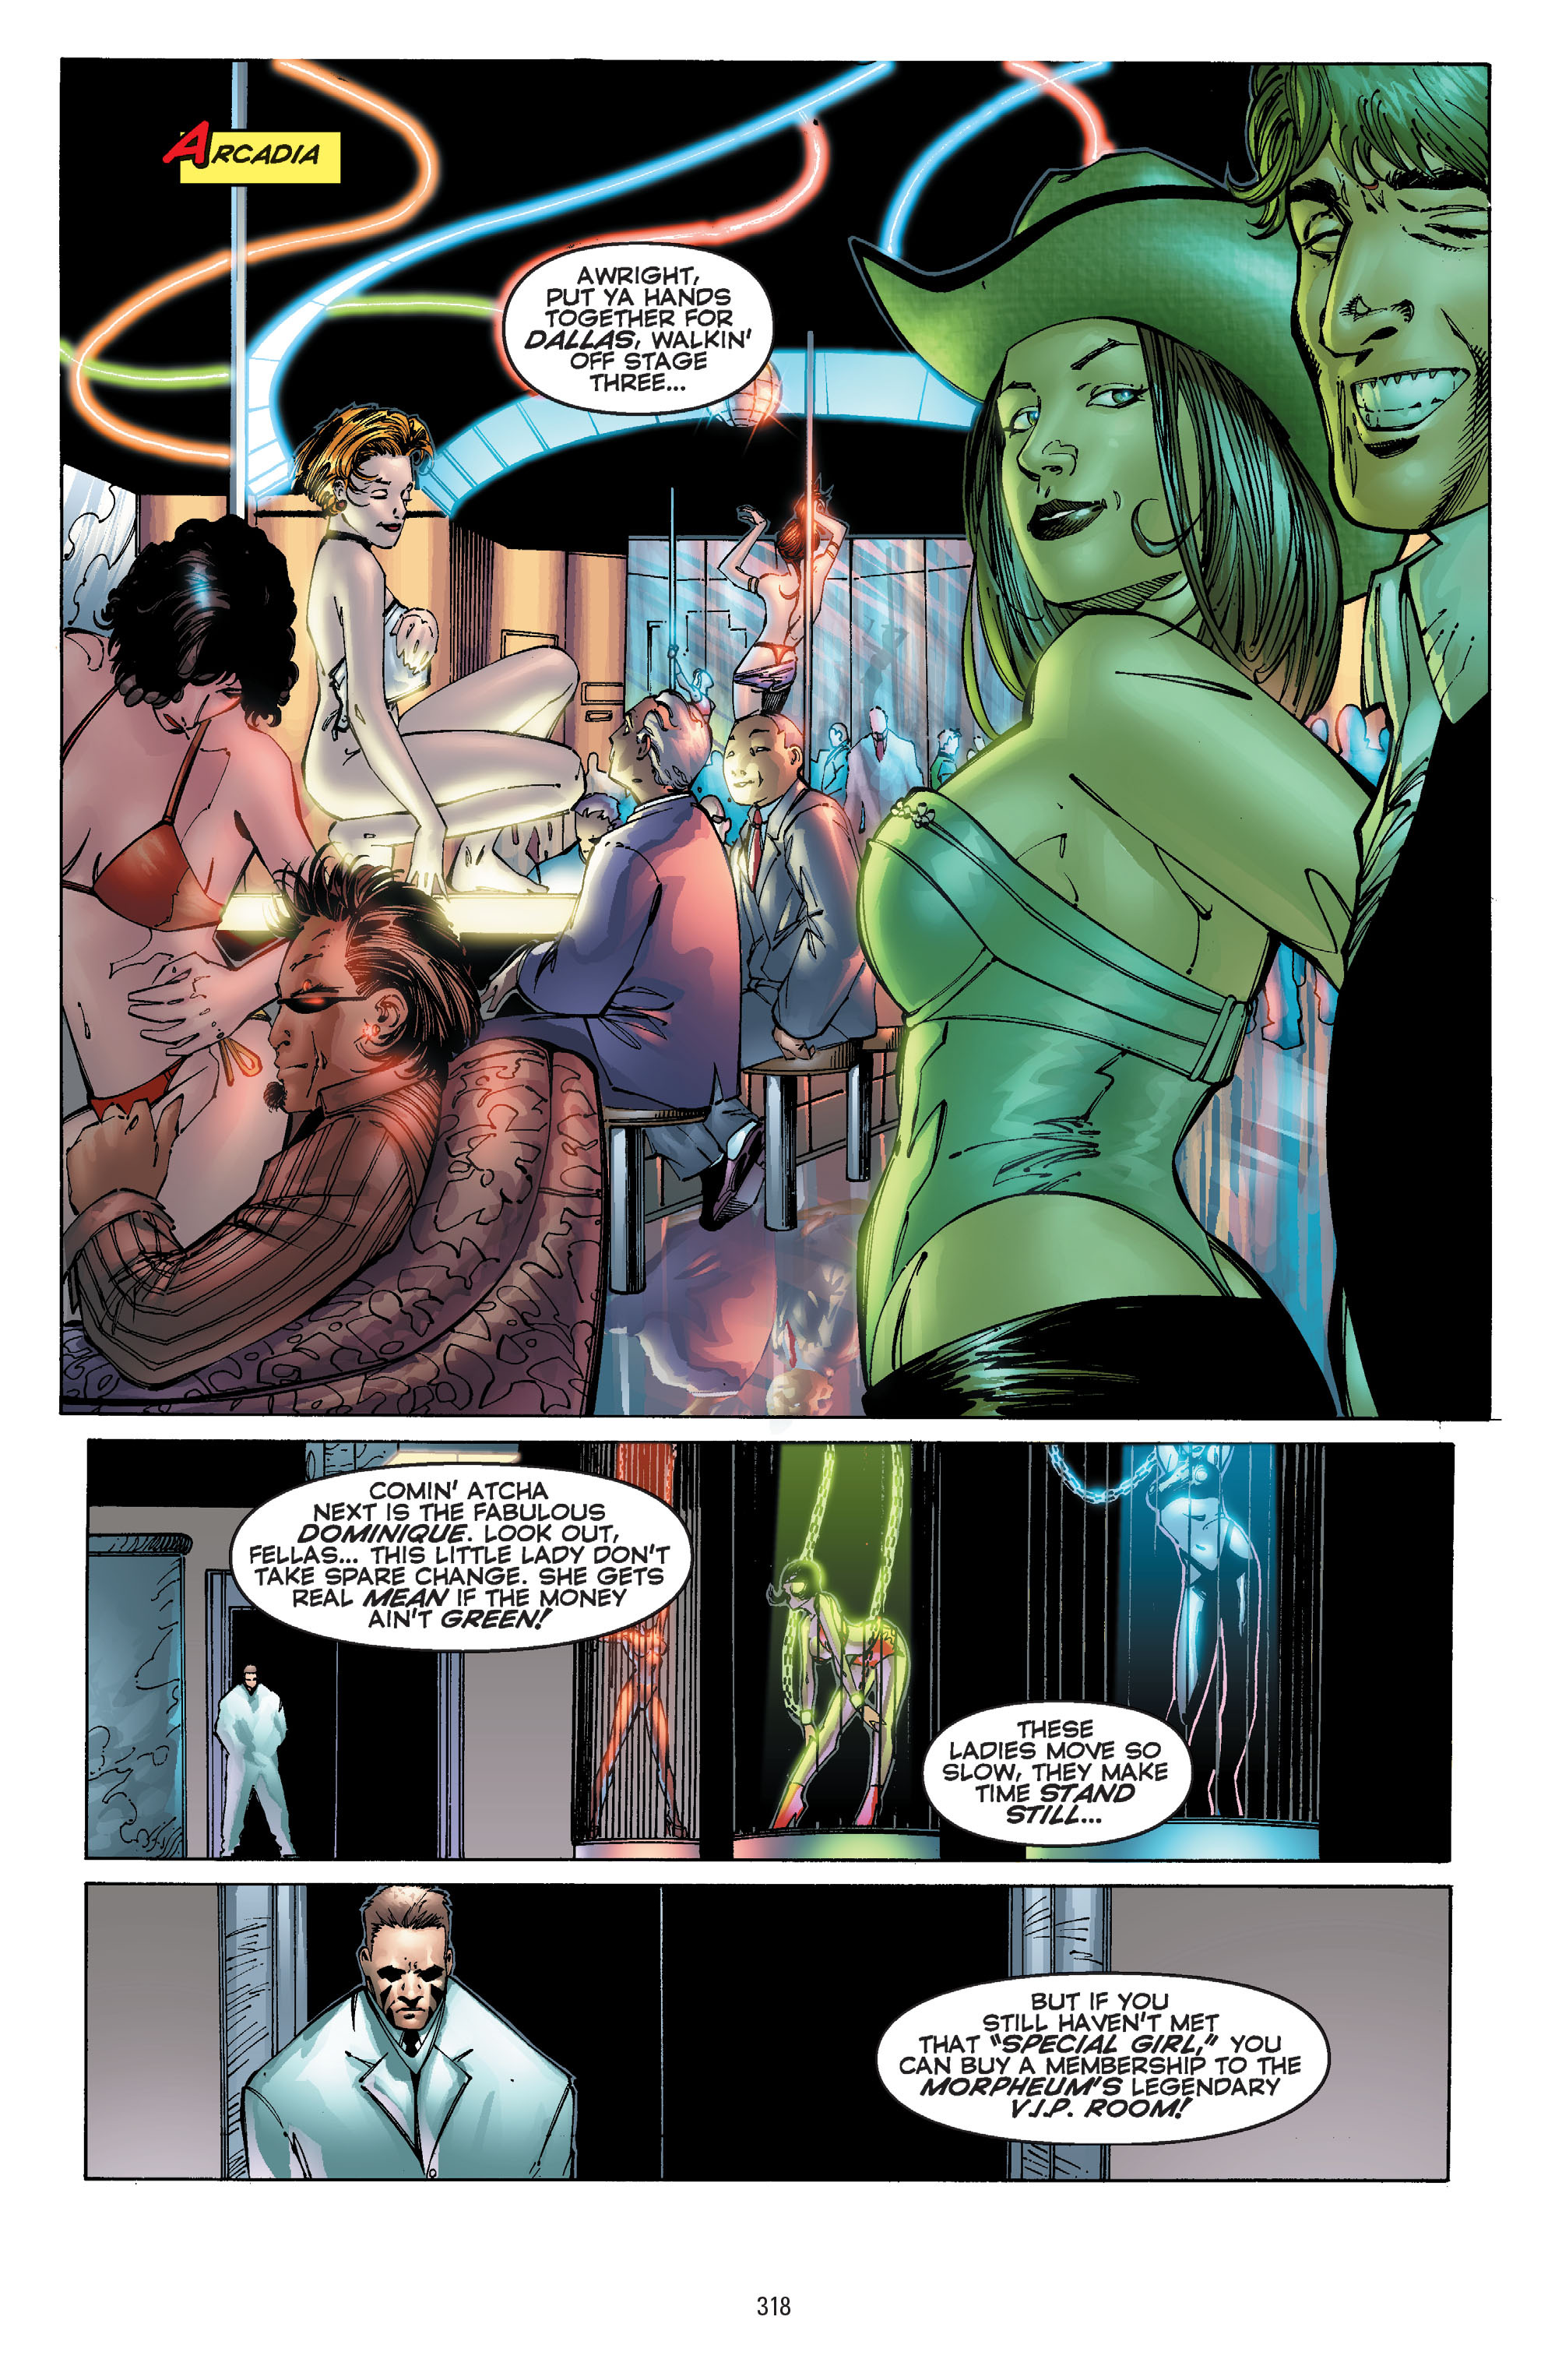 DC Comics/Dark Horse Comics: Justice League Full #1 - English 308